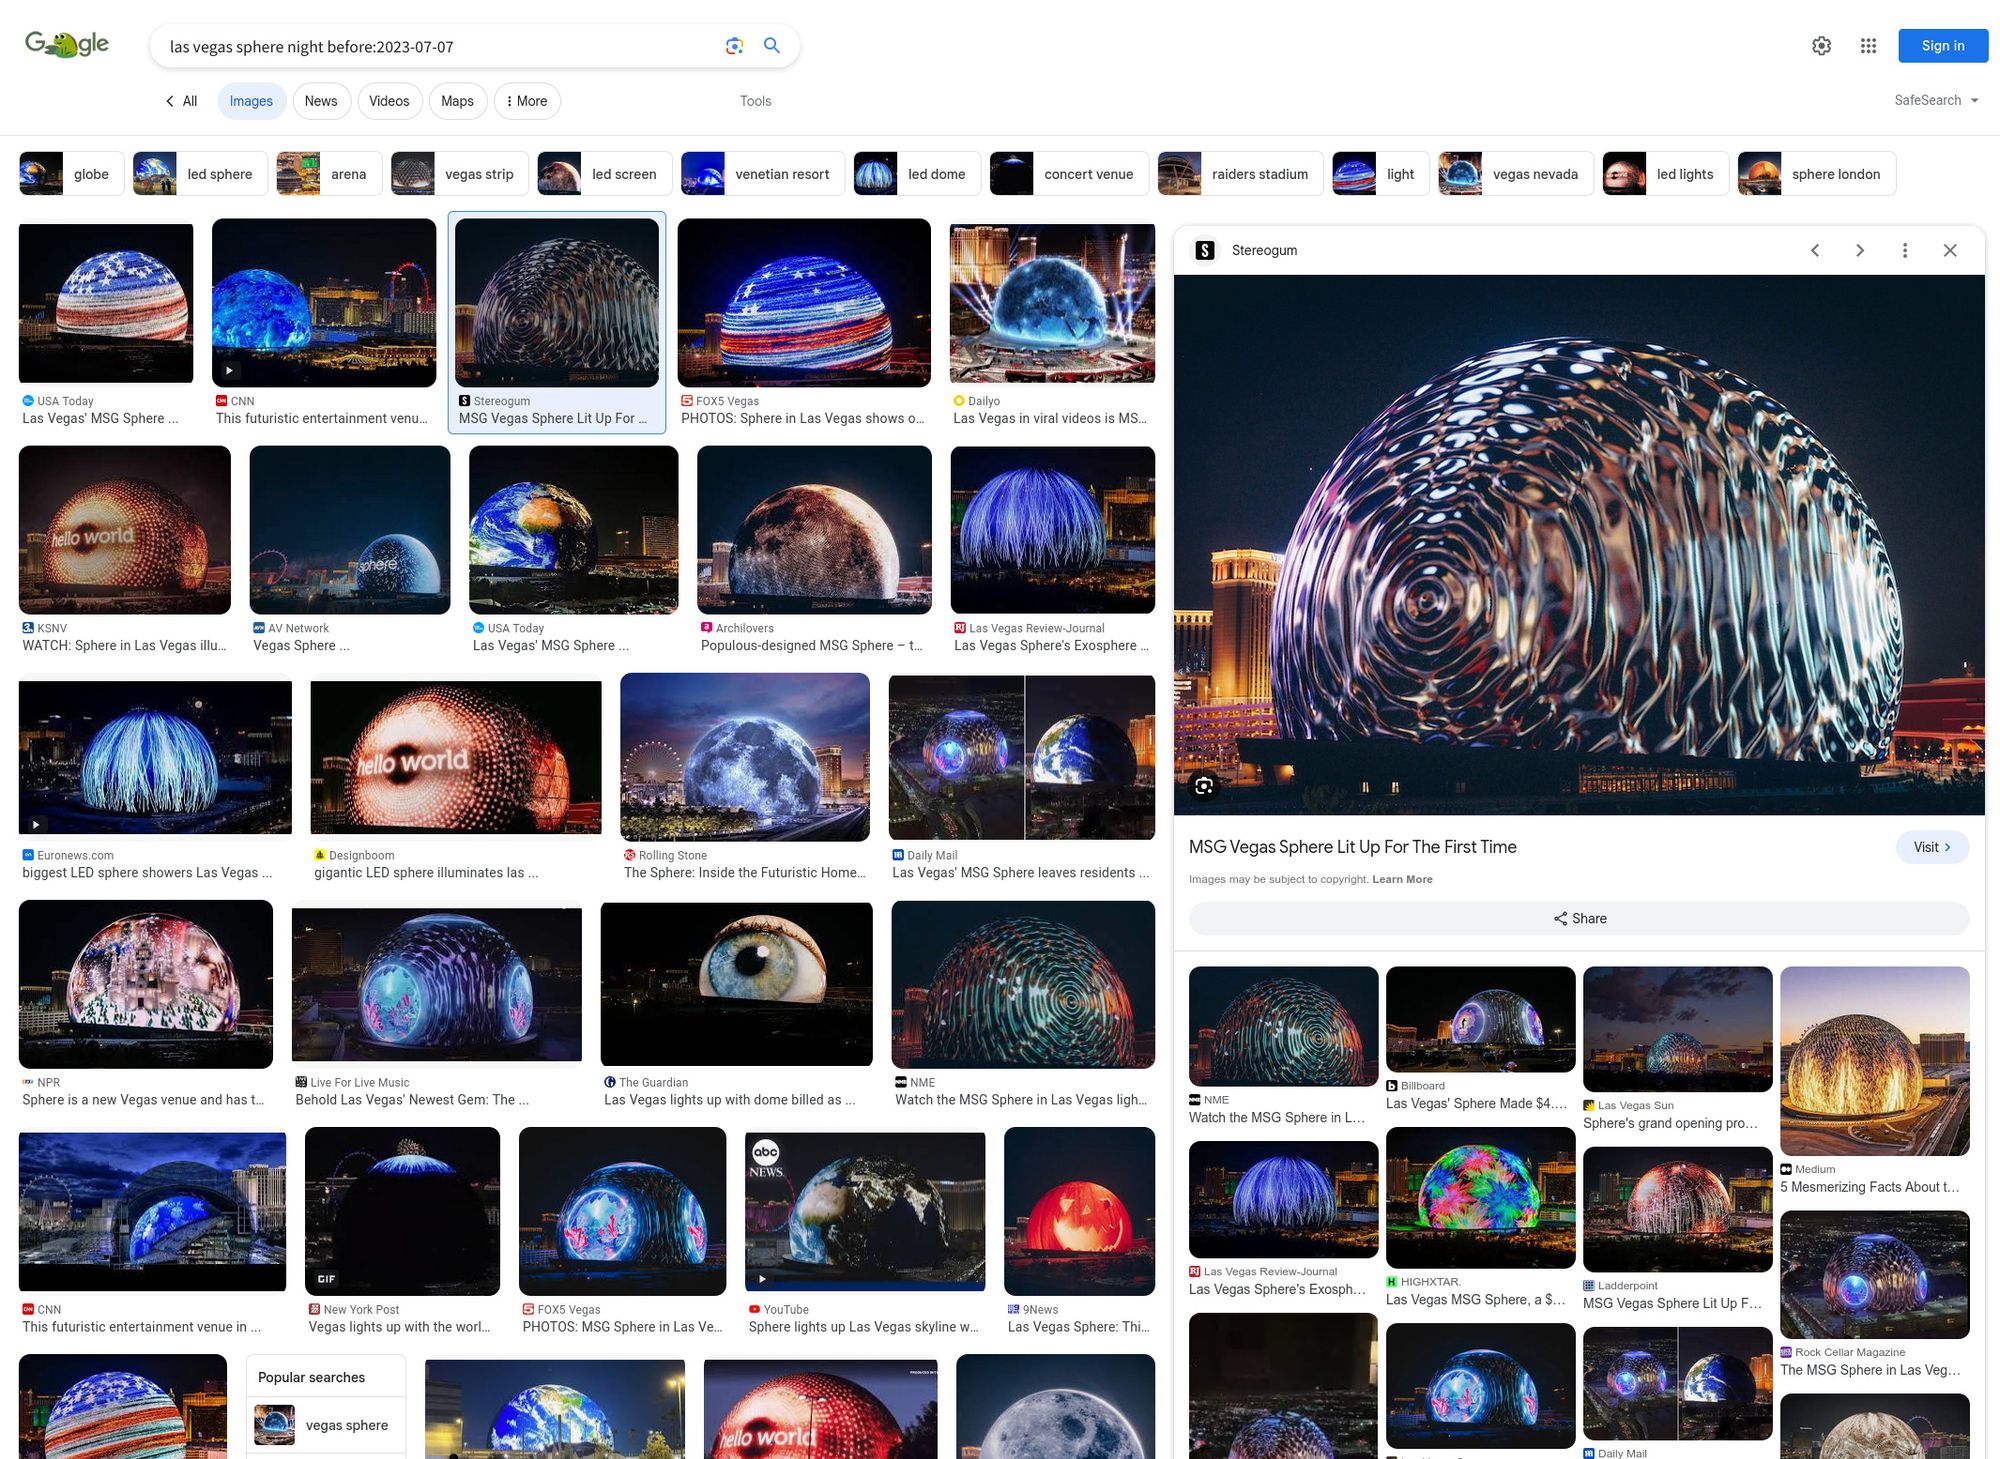 網傳「拉斯維加斯Sphere顯示藍畫面」圖片經過後製，非真實畫面